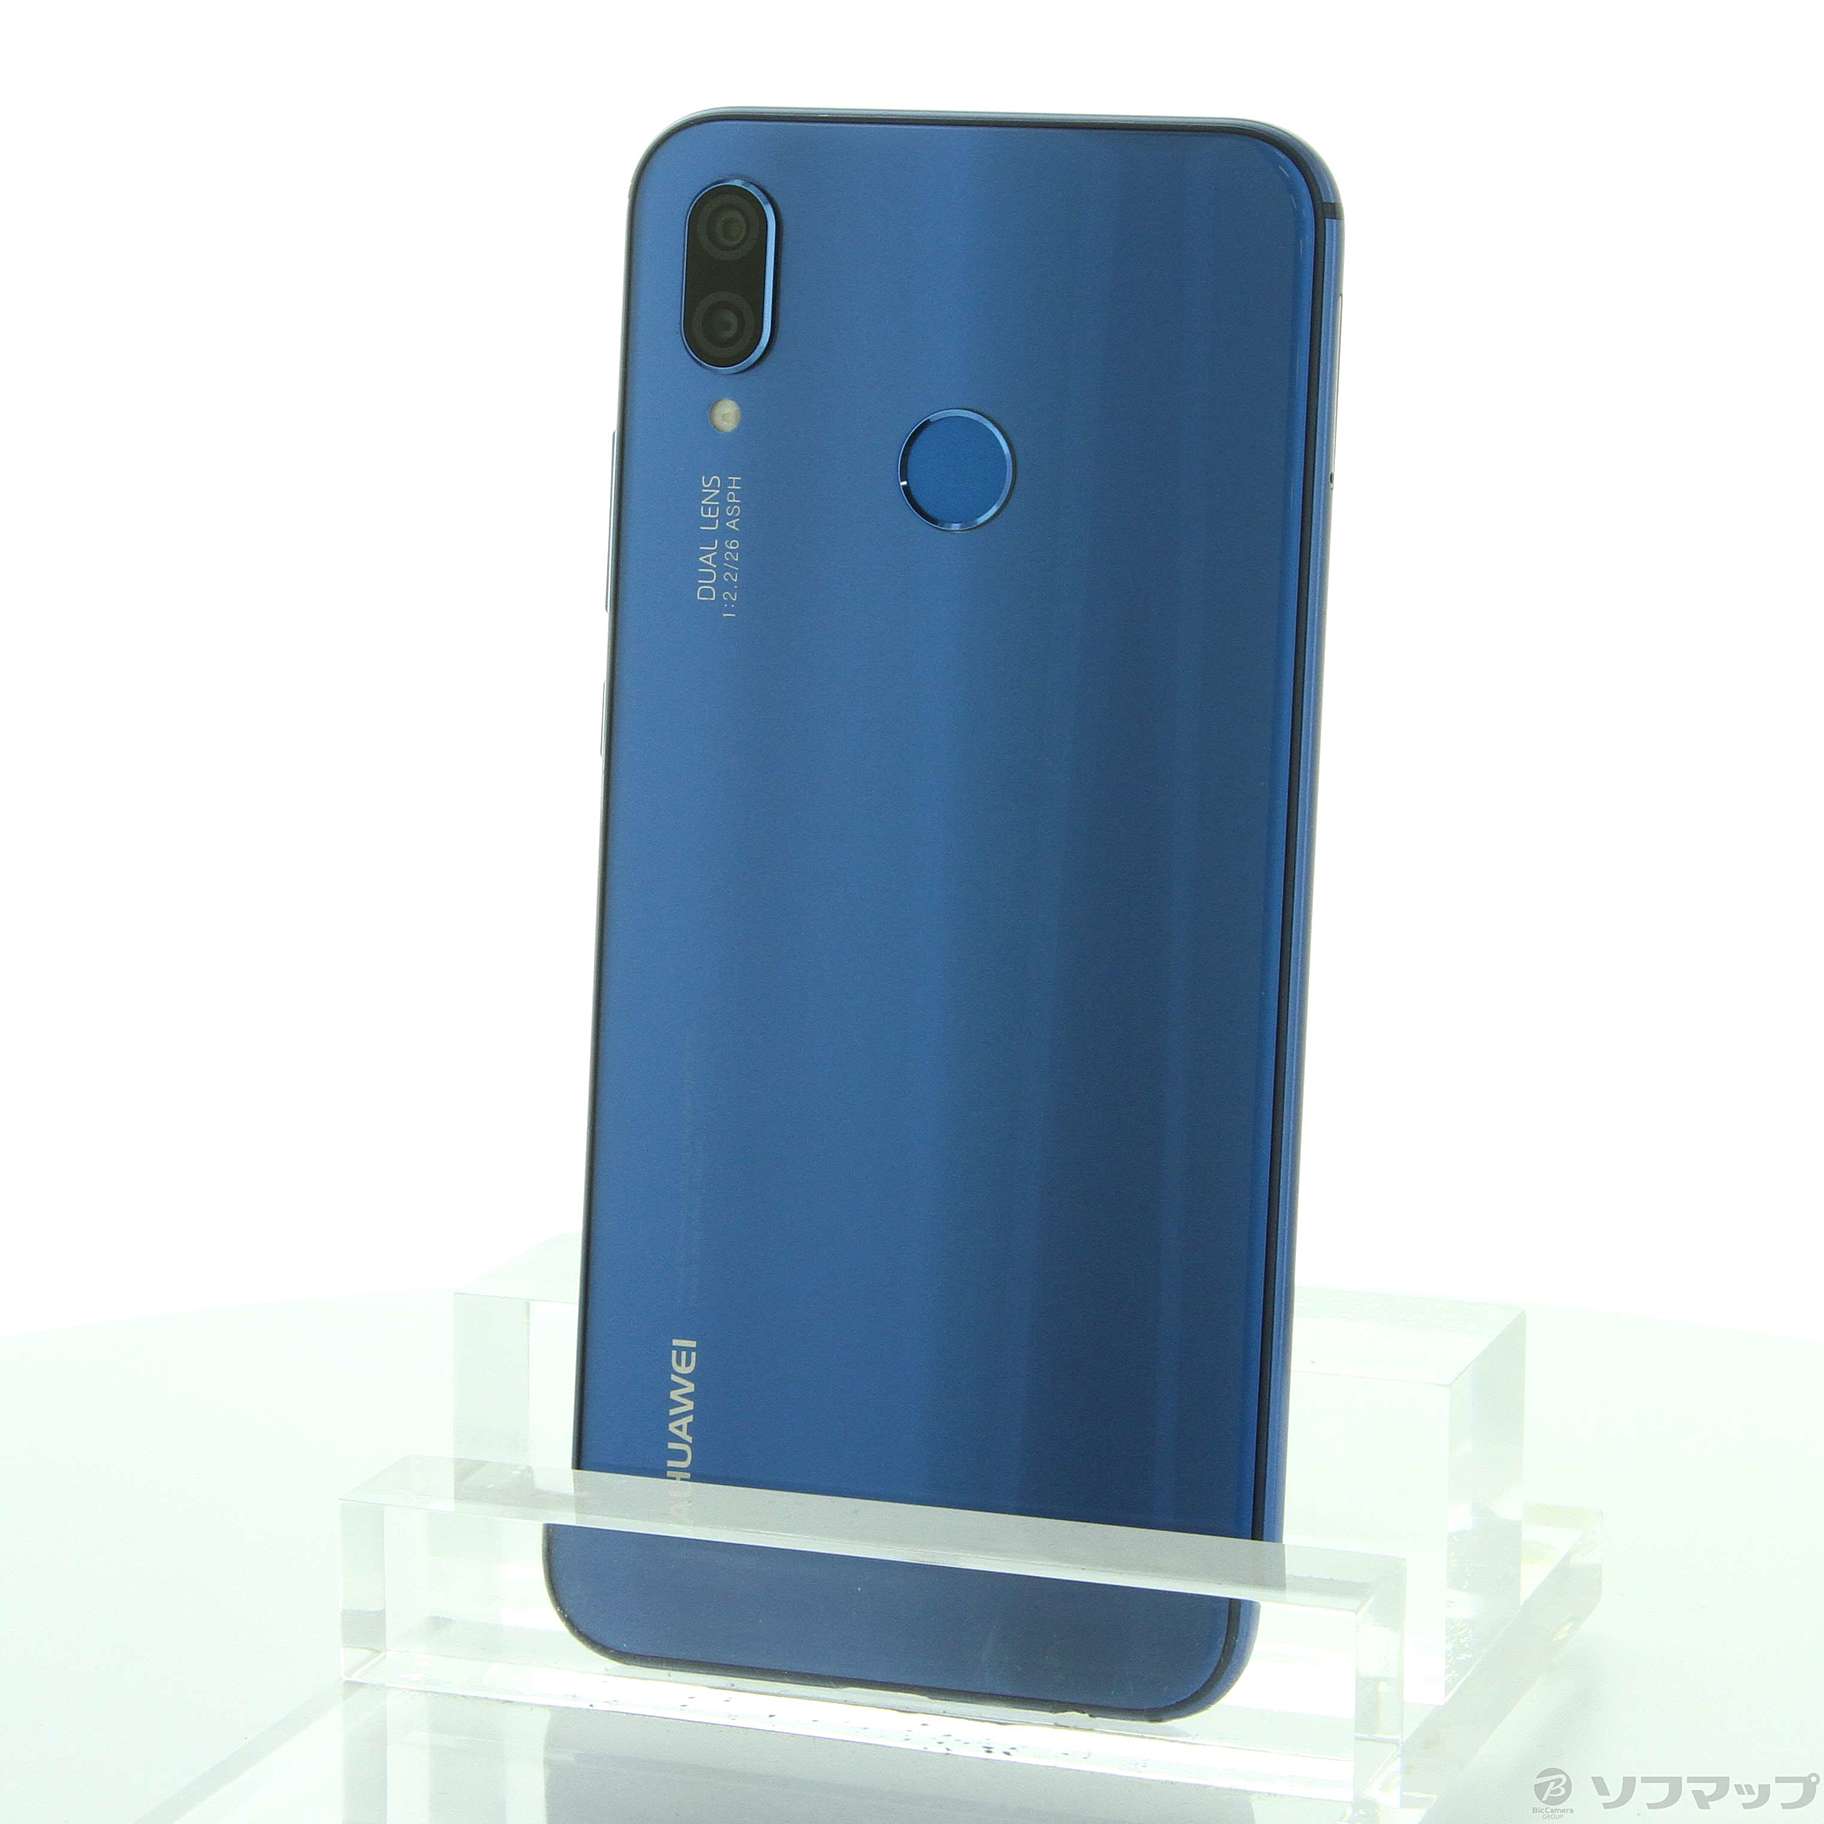 Huawei P20 lite 32GB Blue 《新品》simフリー